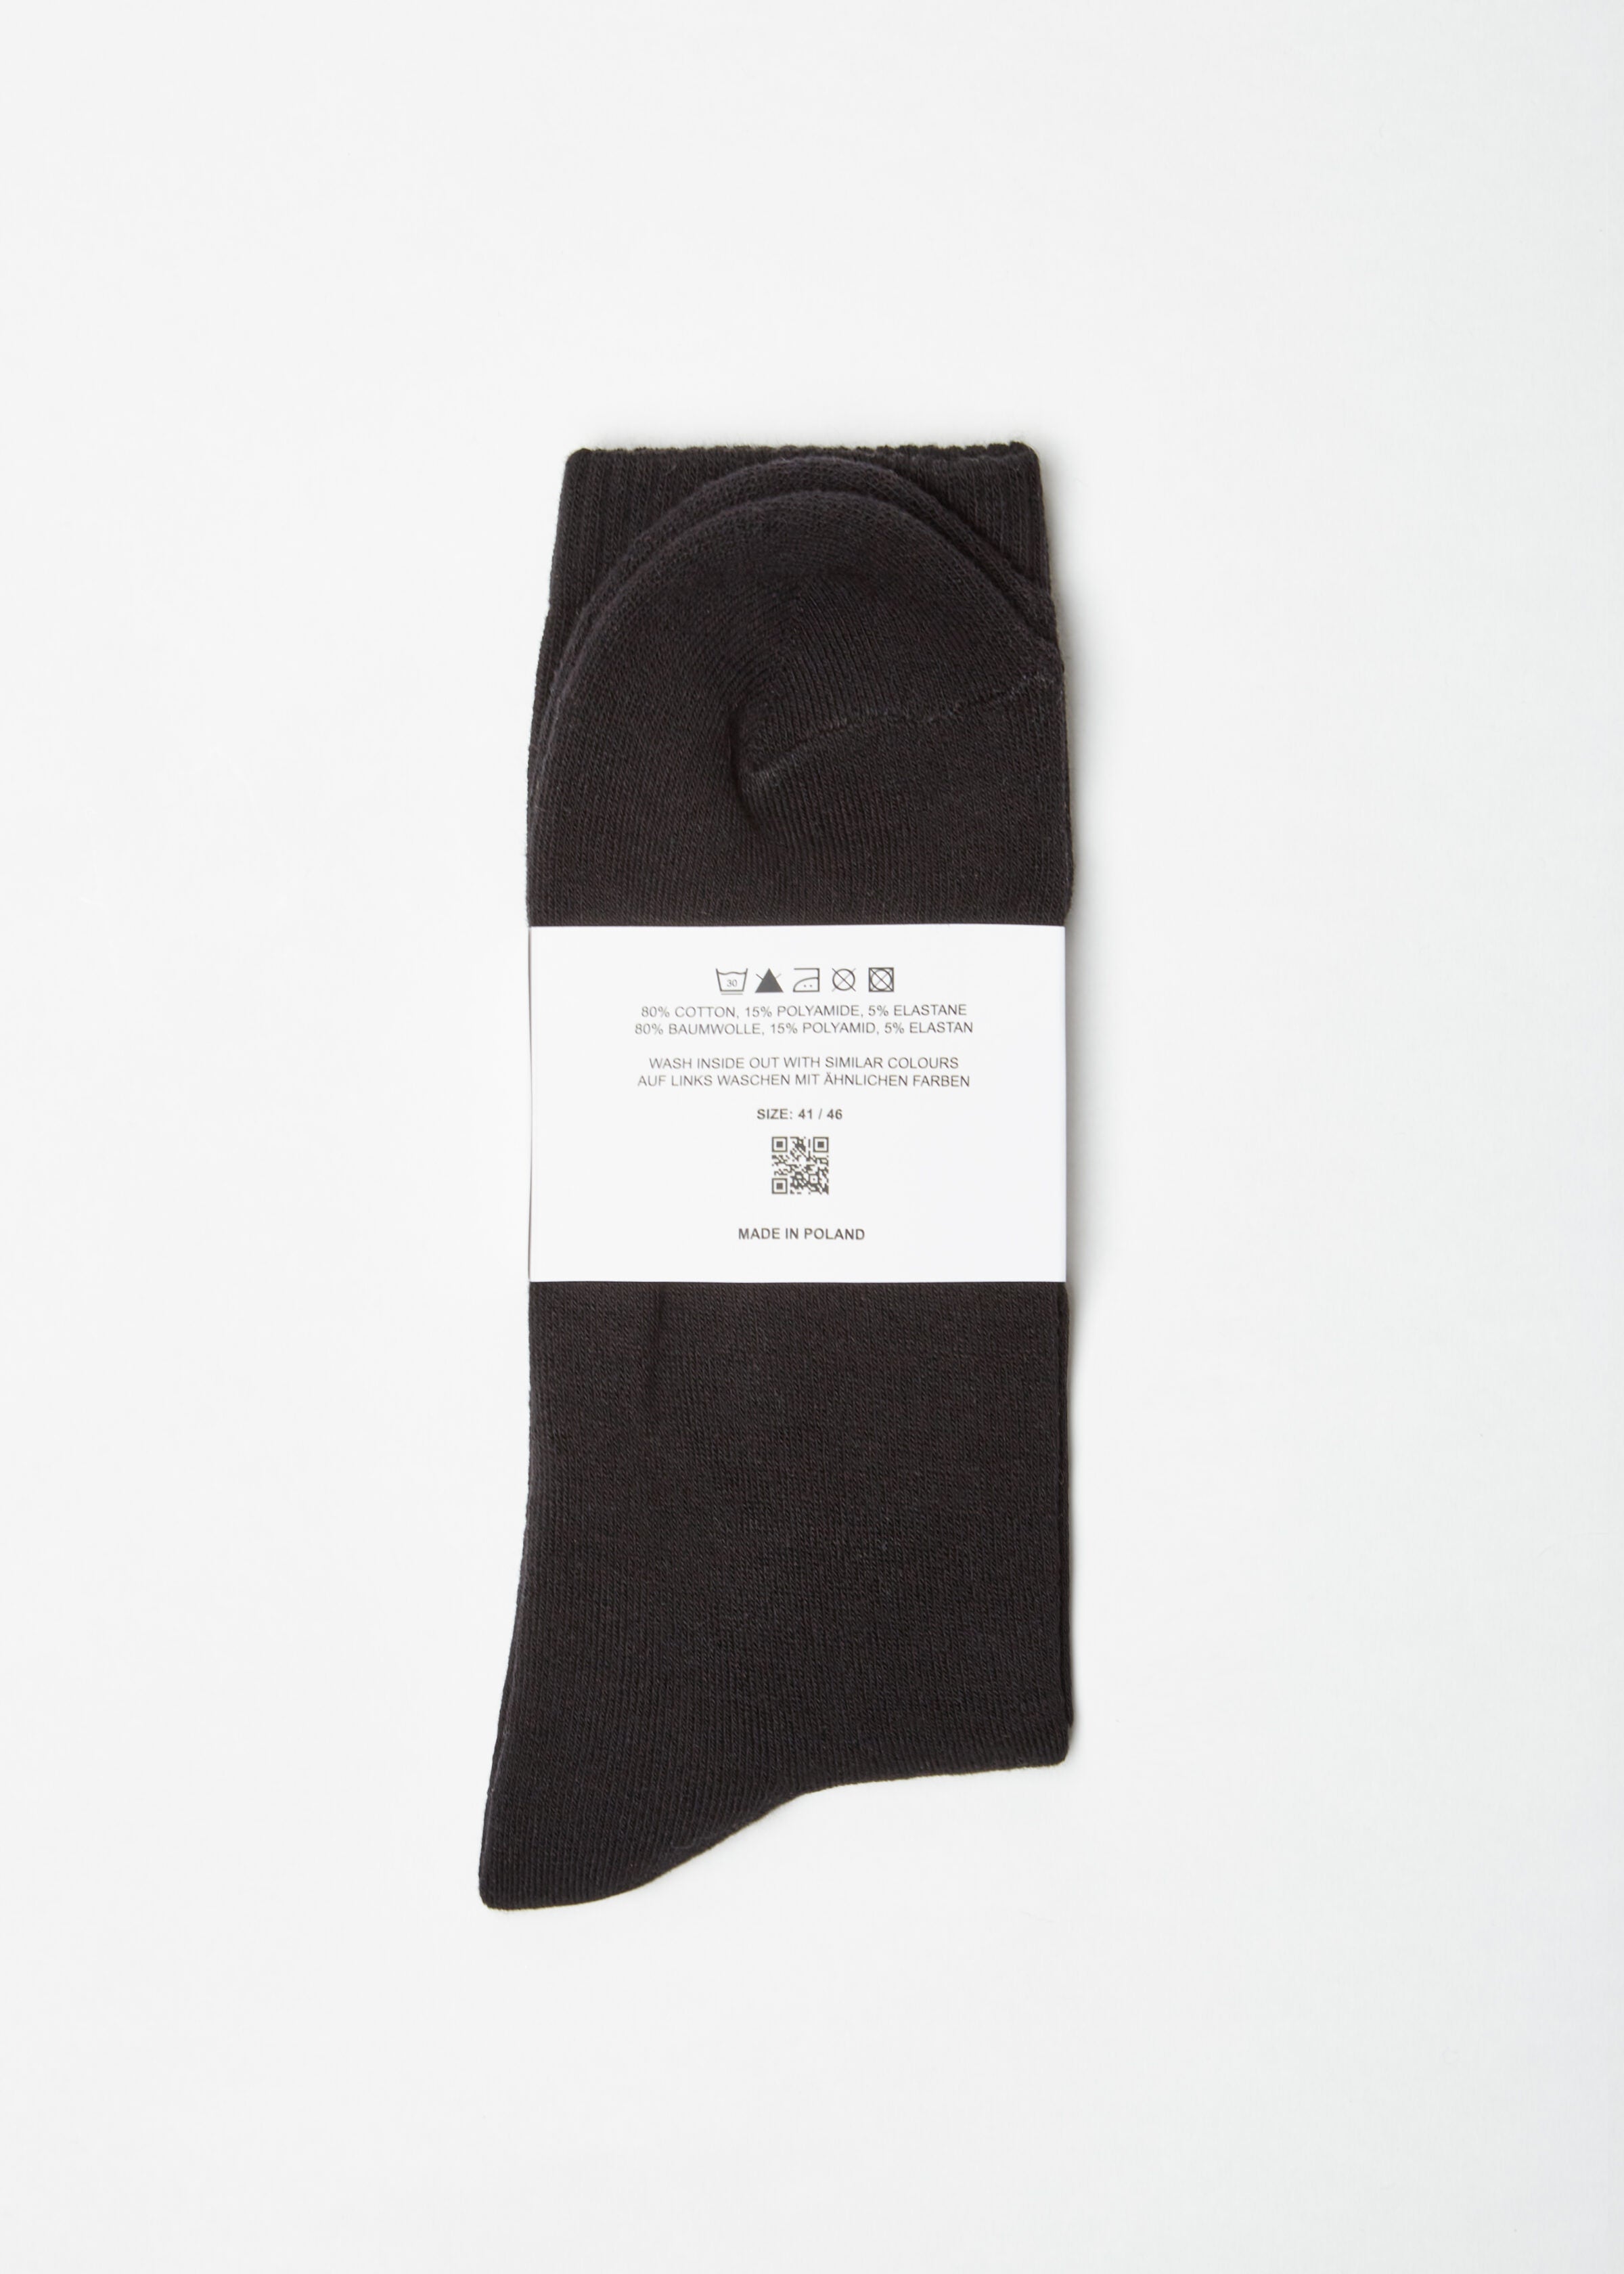 Vitus Socks Black Größe: 41-46 Farbe: black